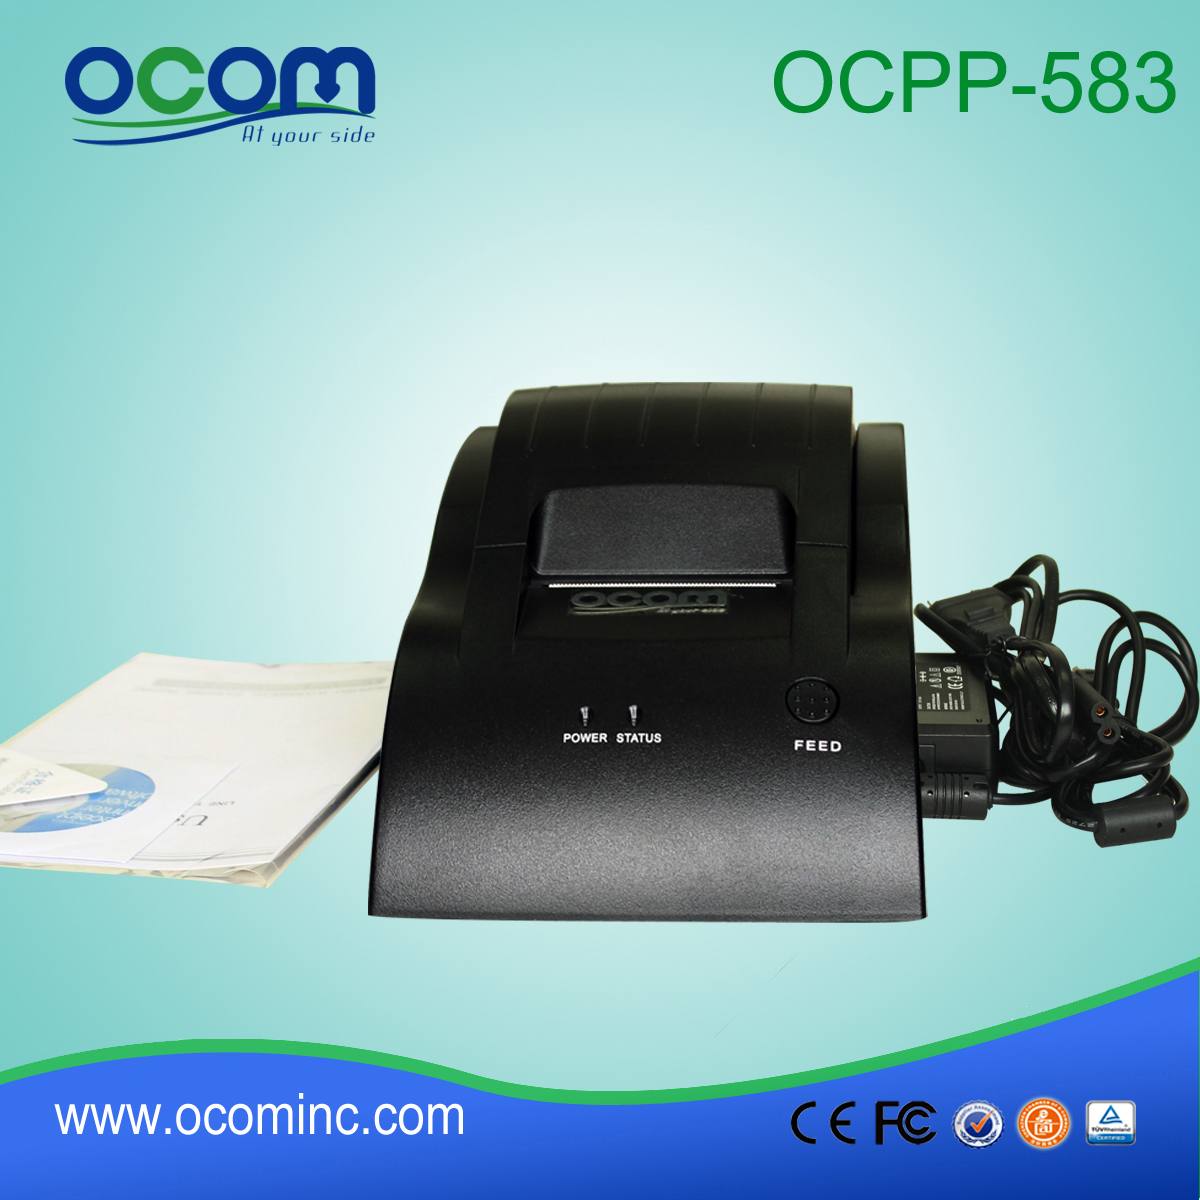 قدمت الصين 58mm وPOS صغيرة الطابعة OCPP-583